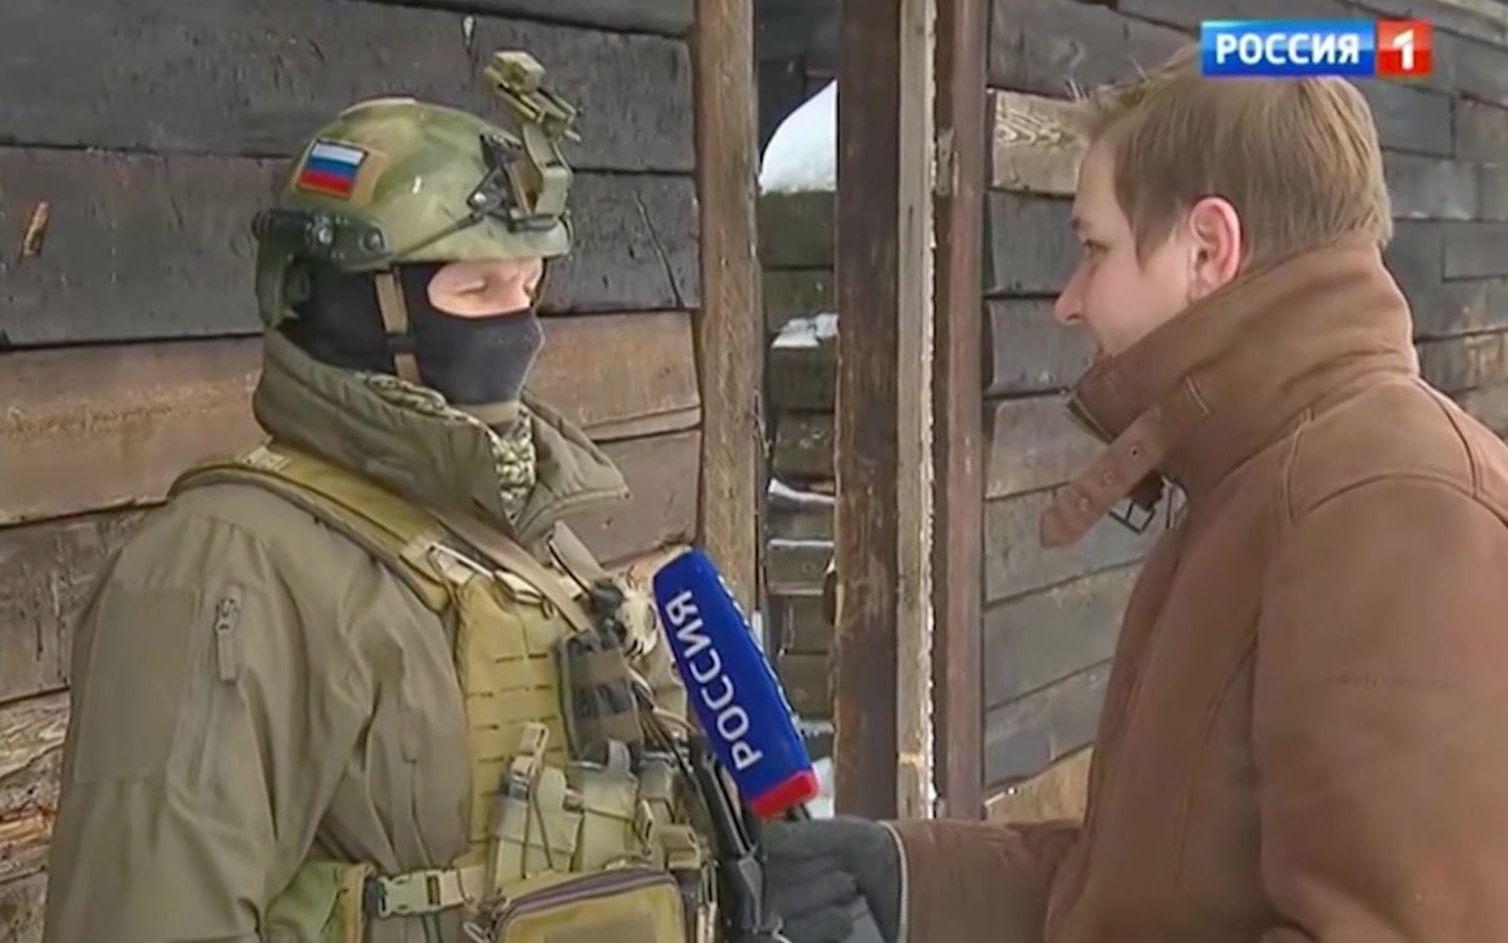 Rysk soldat intervjuas i rysk tv. Skärmdump från ryska statliga televisionen.